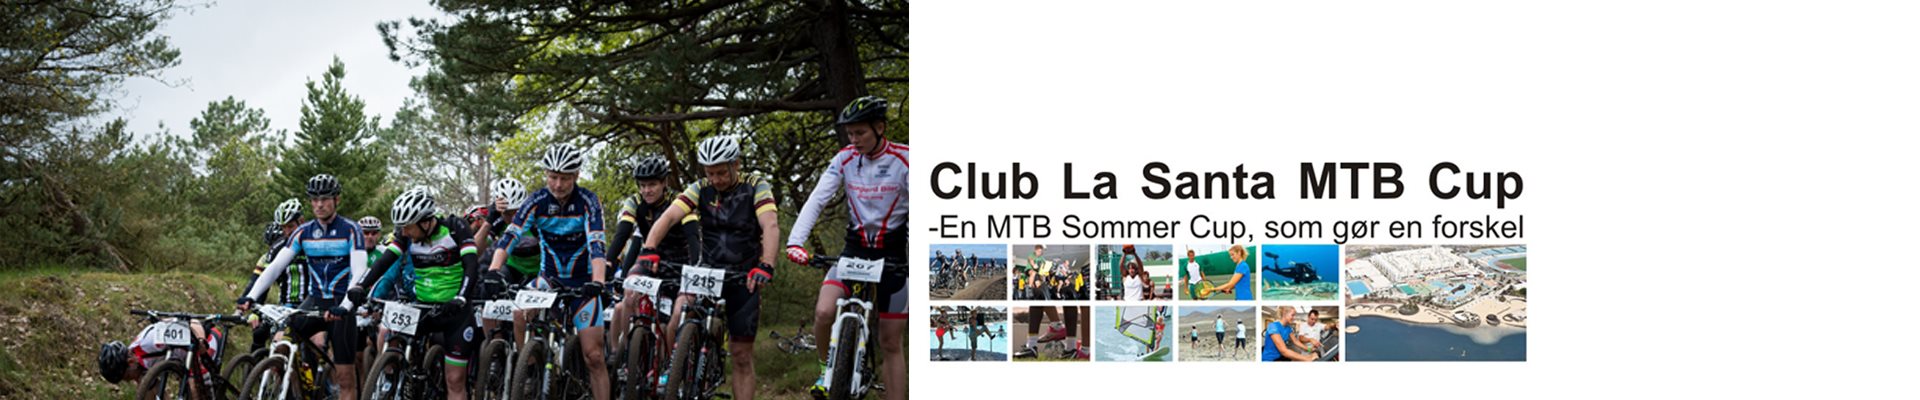 CLUB LA SANTA MTB CUP '21 - #7 Mentor IT MTB, Esbjerg